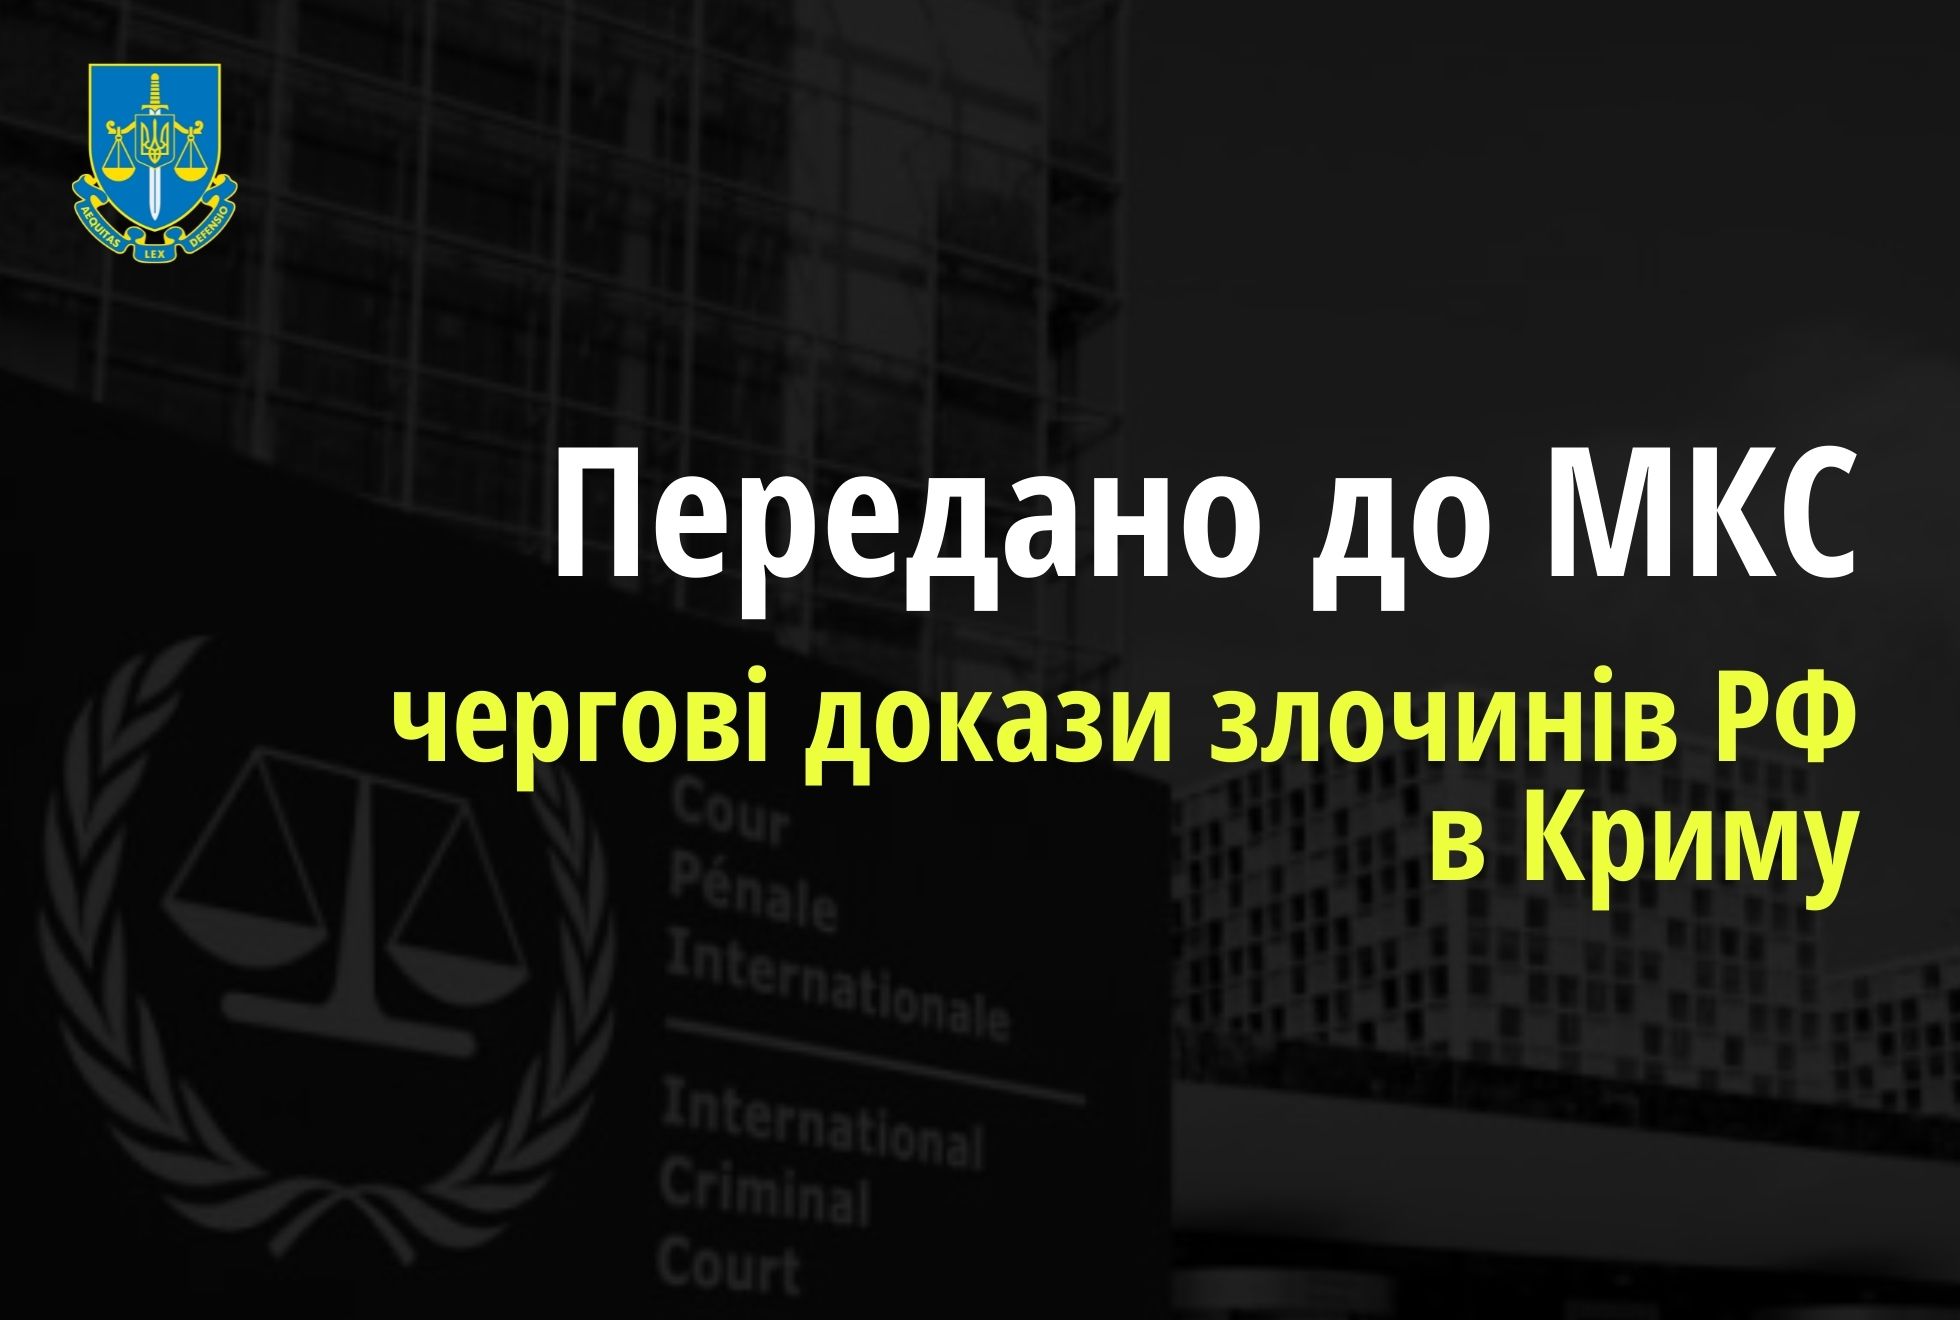 До Міжнародного кримінального суду направлено чергові докази злочинів РФ проти корінного народу Криму